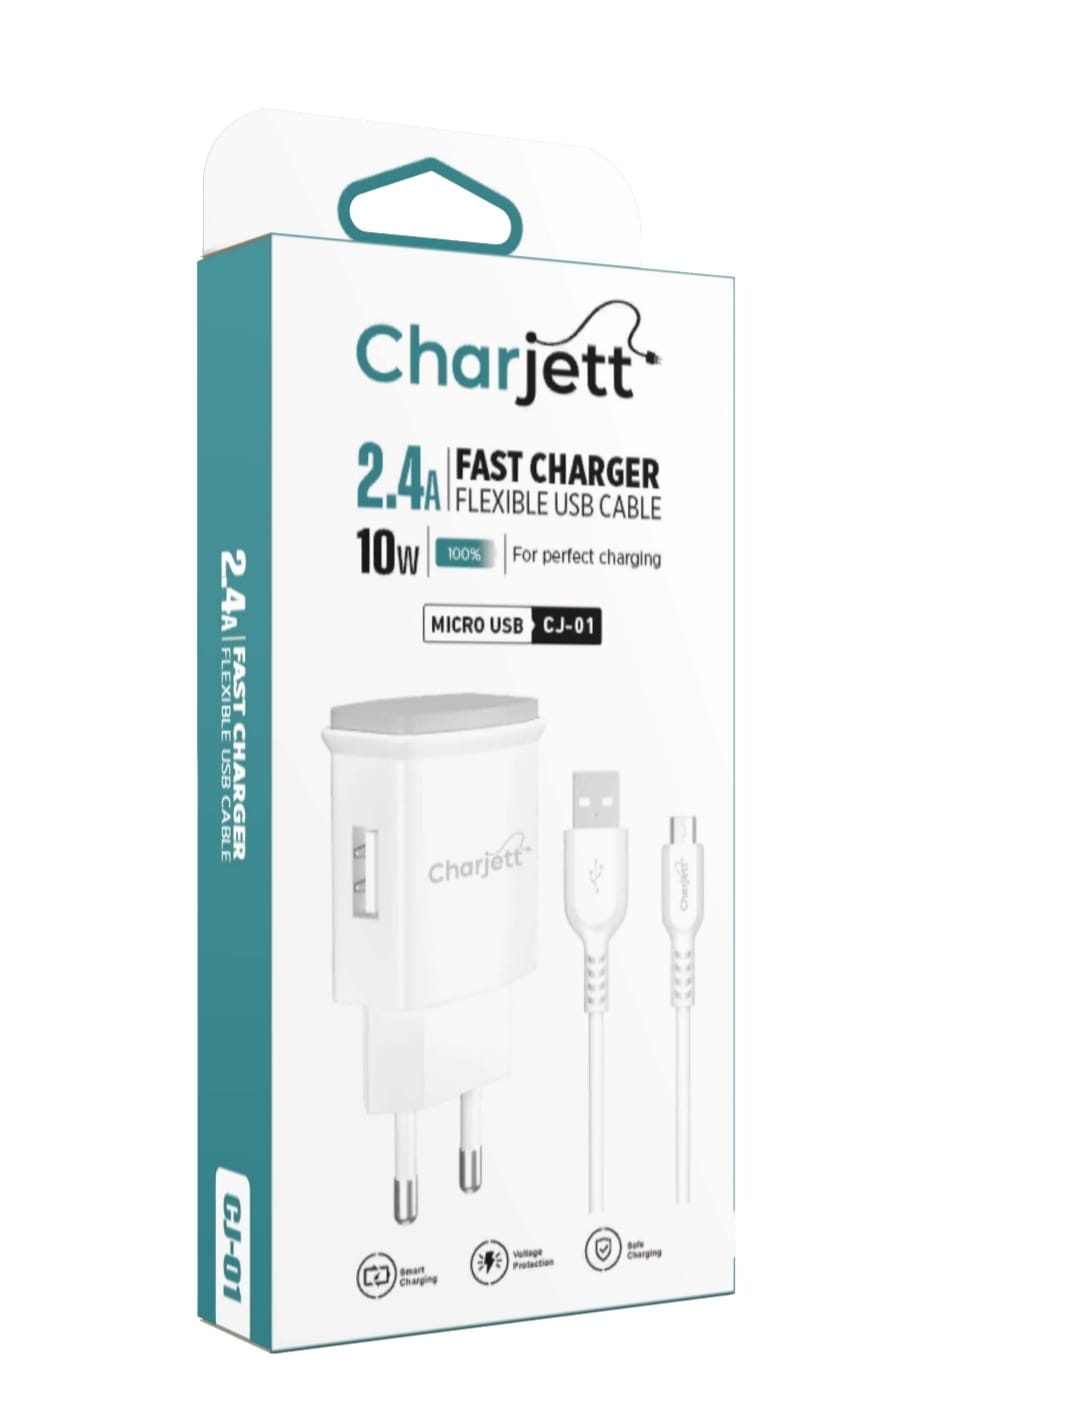 Charjett 2.4A Micro USB